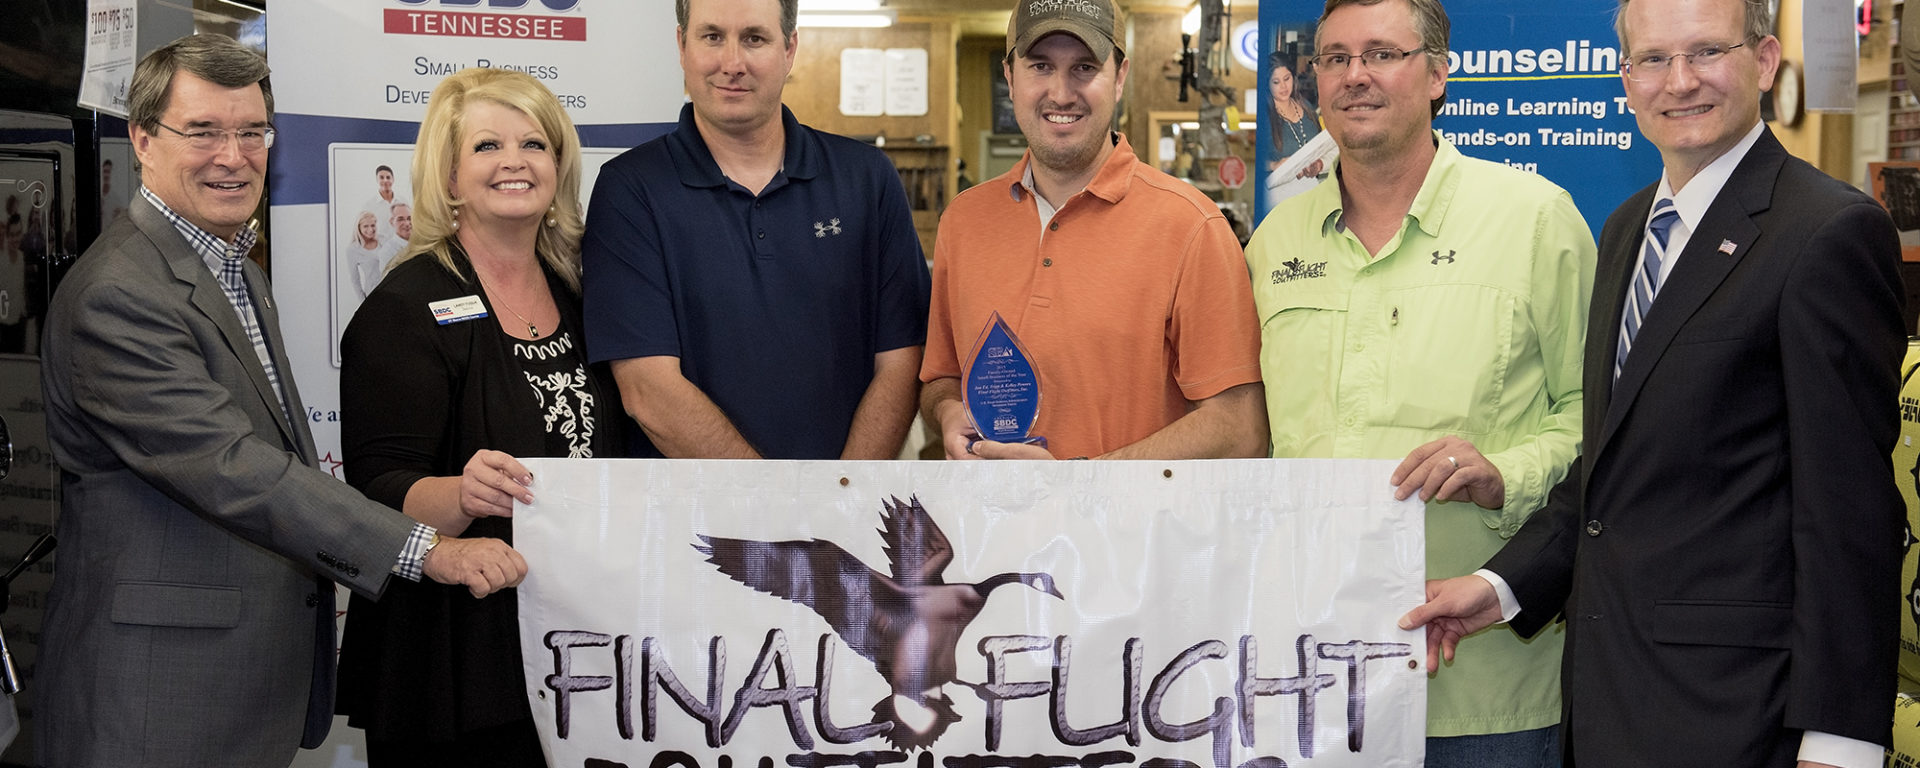 Final Flight Outfitter Inc. wins award